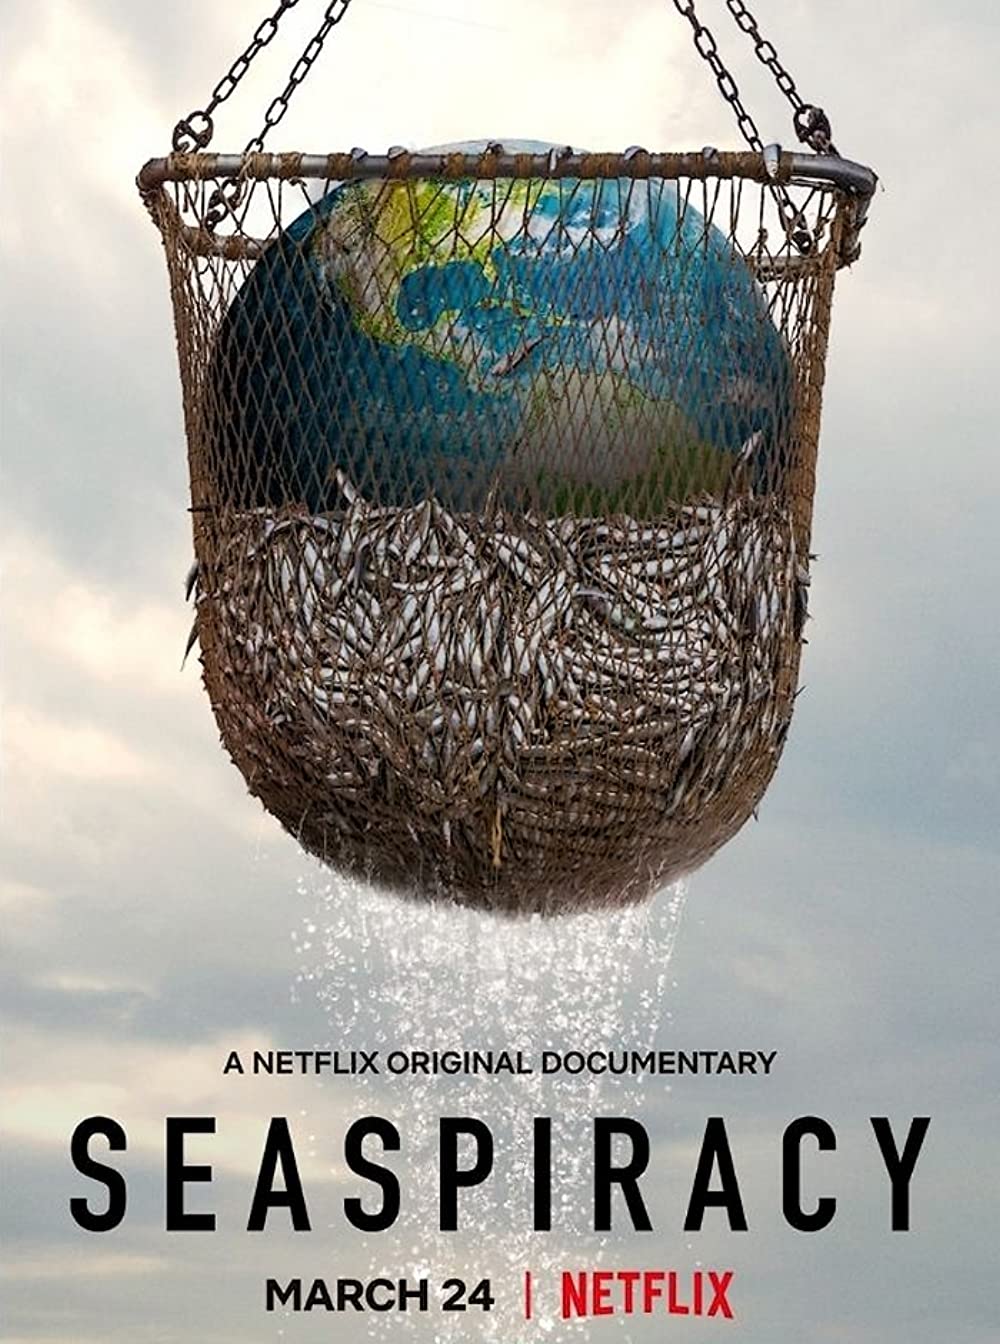 ดูหนังออนไลน์ฟรี ดูหนังใหม่ Netflix SEASPIRACY 2021 ใครทำร้ายทะเล movie678